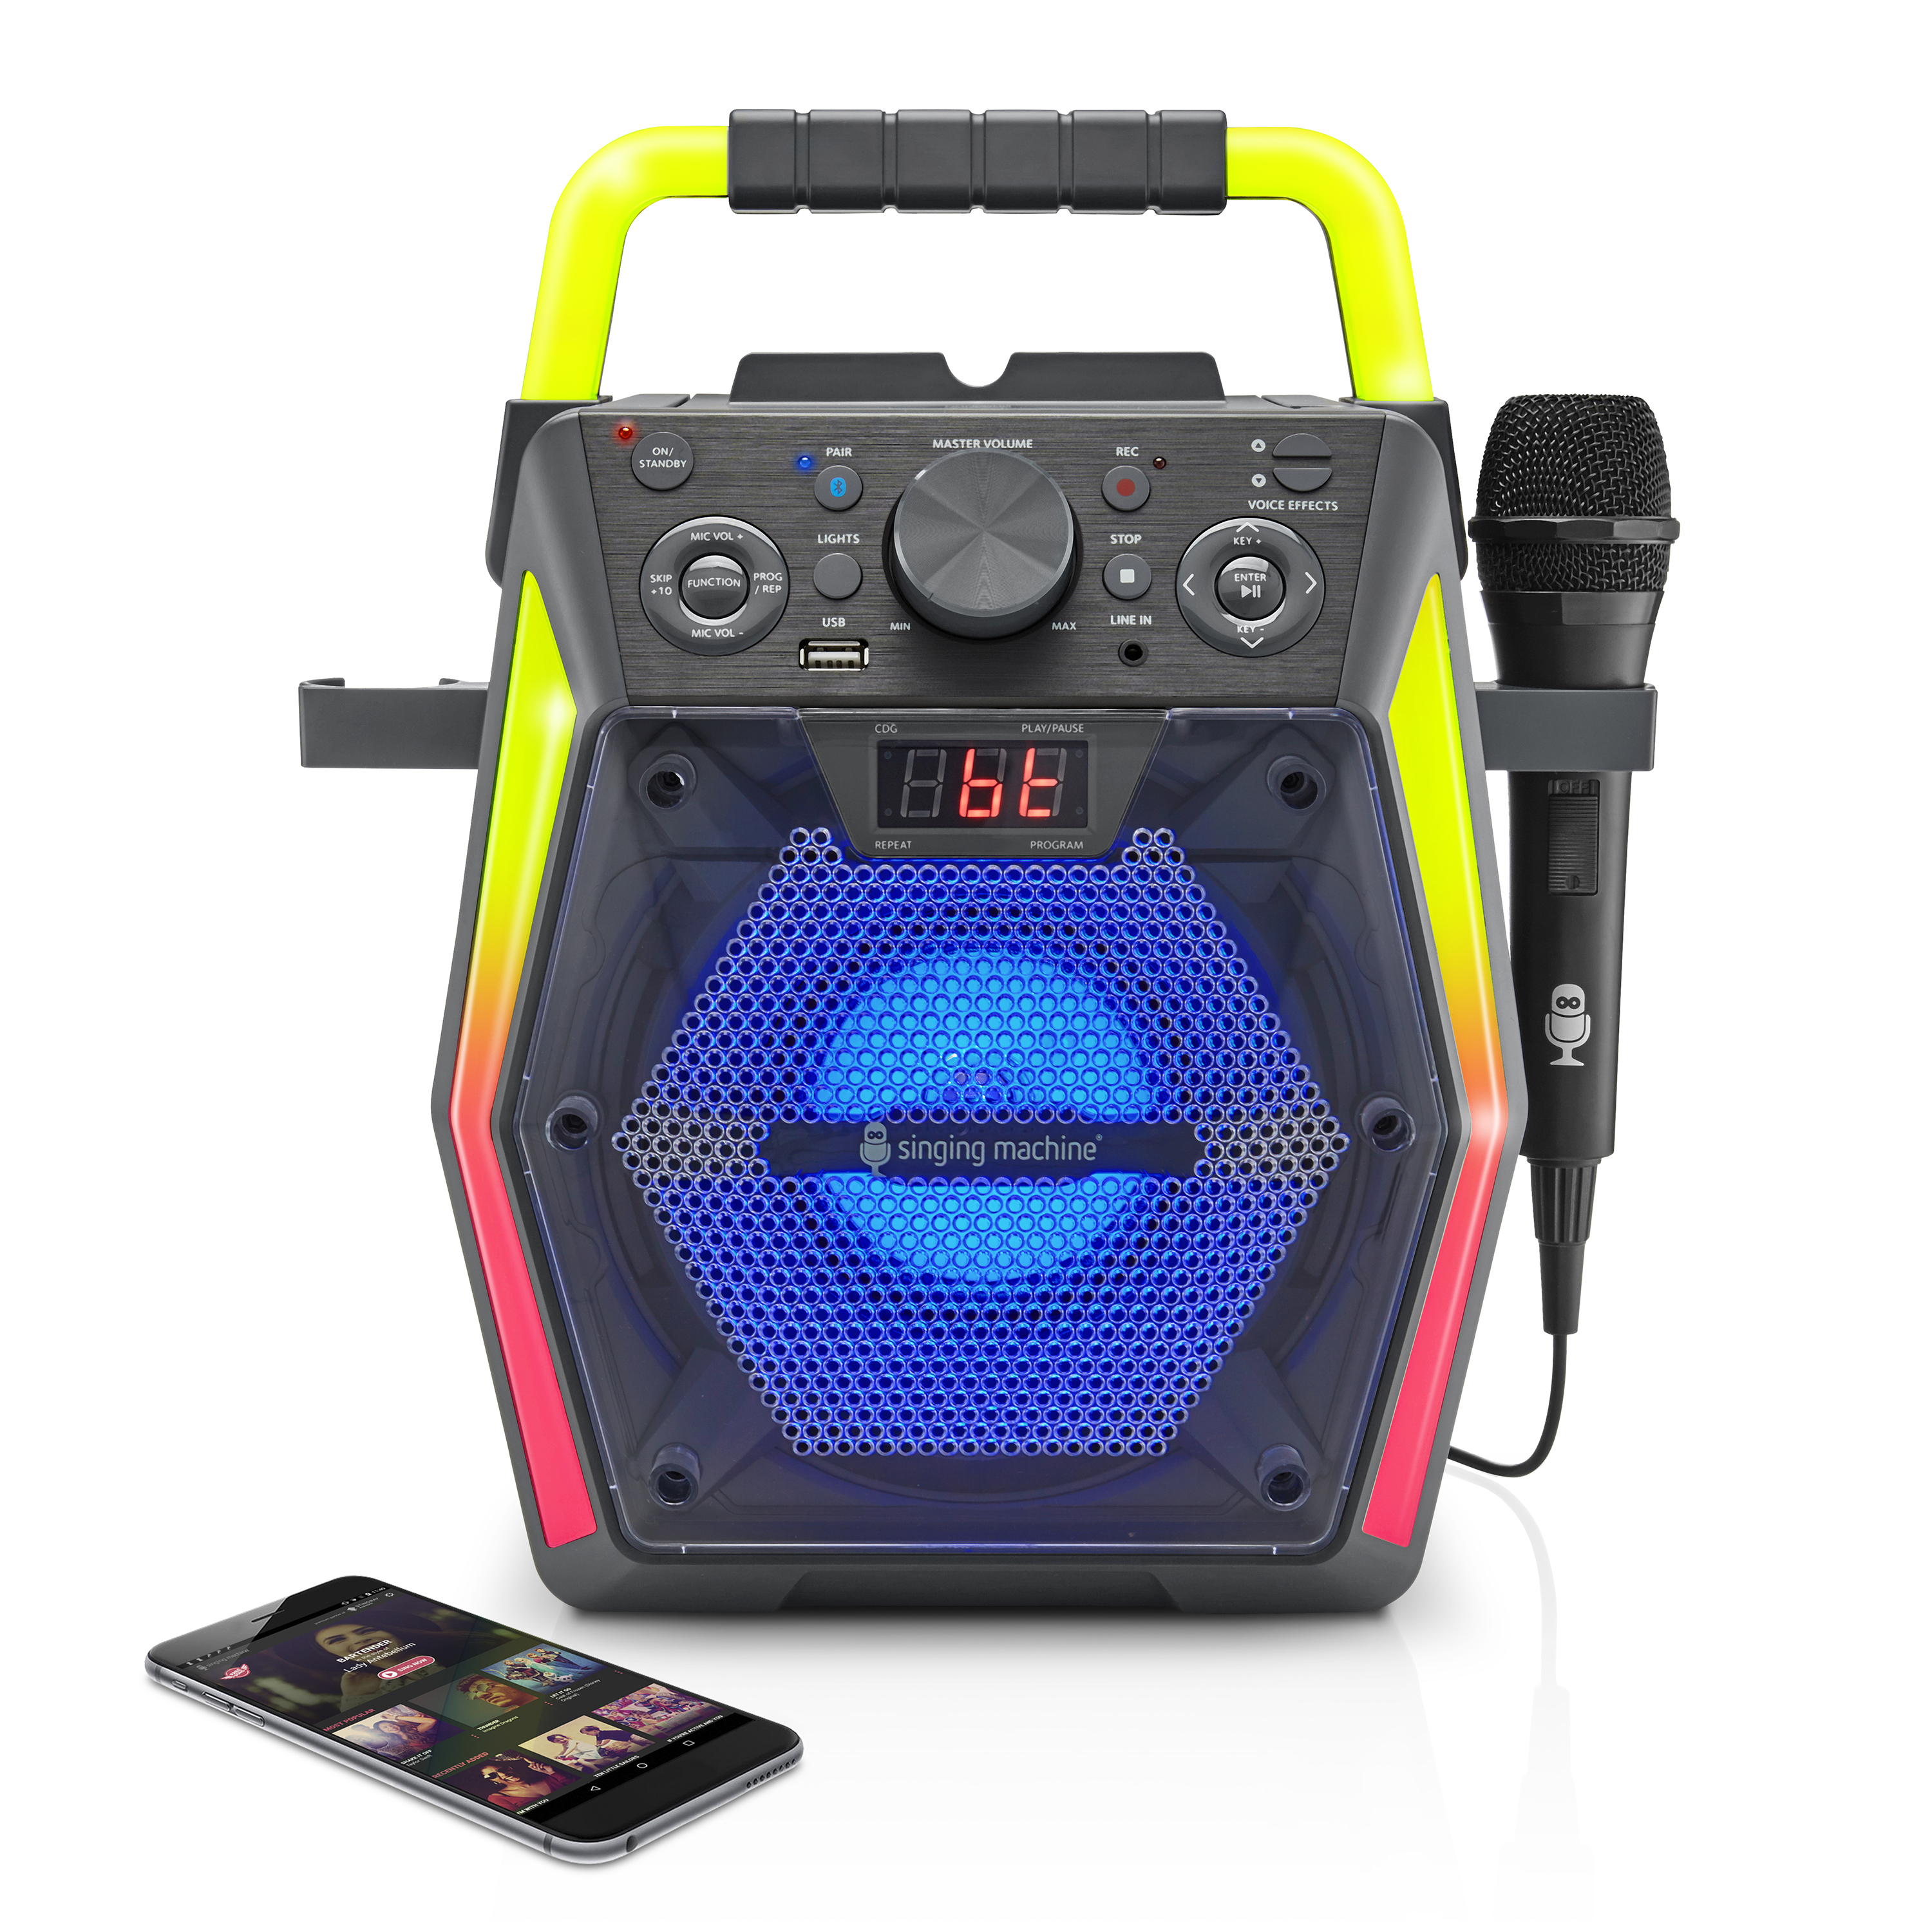 Singing Machine Bluetooth Karaoke SML2300 - image 2 of 10